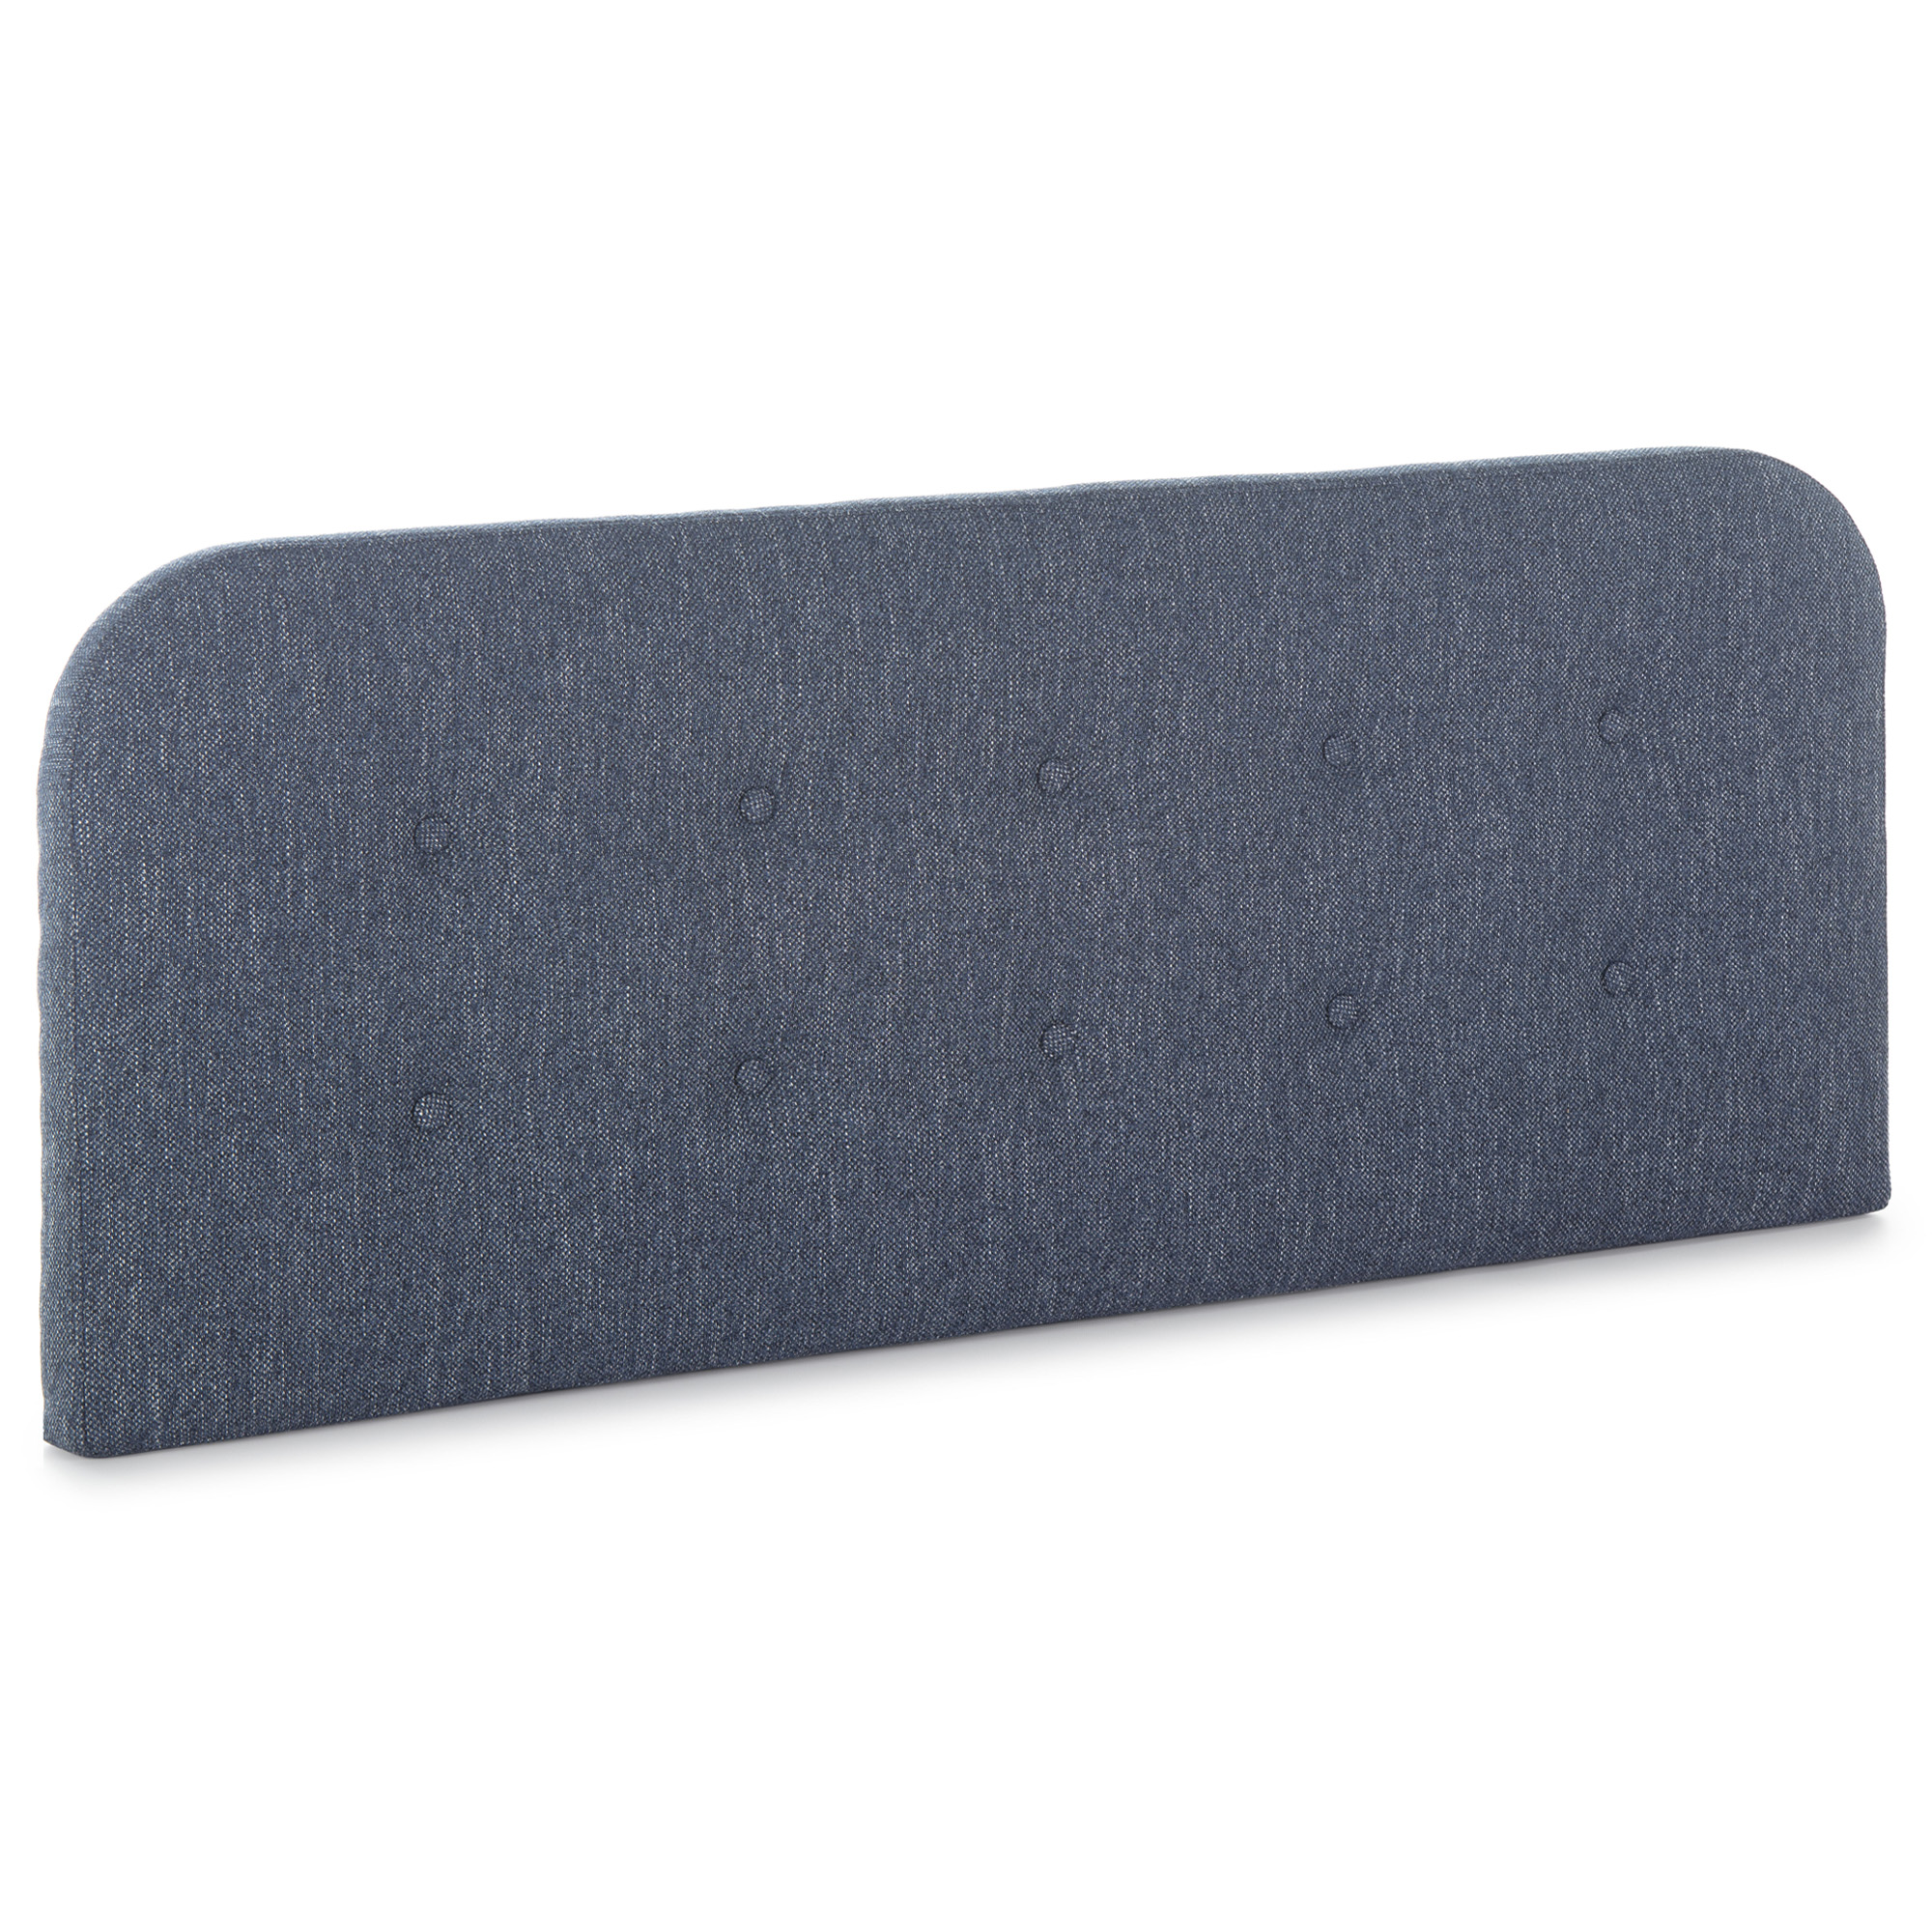 Tête de lit tapissée 150x60 cm couleur bleu, 8 cm d'épaisseur